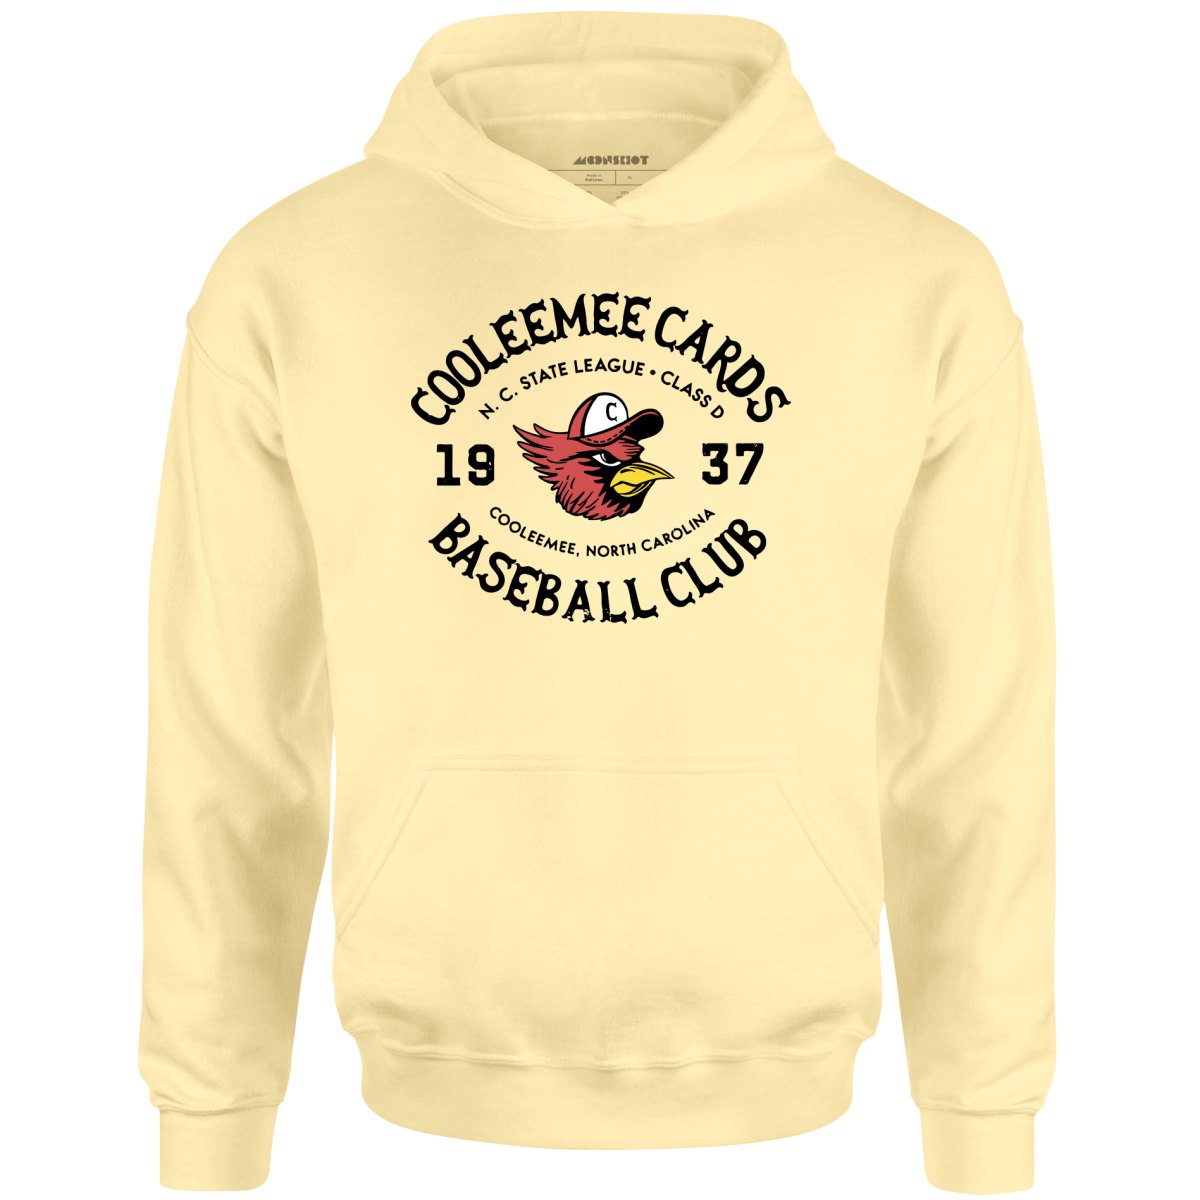 1940 St. Louis Cardinals baseball shirt, hoodie, sweater, long